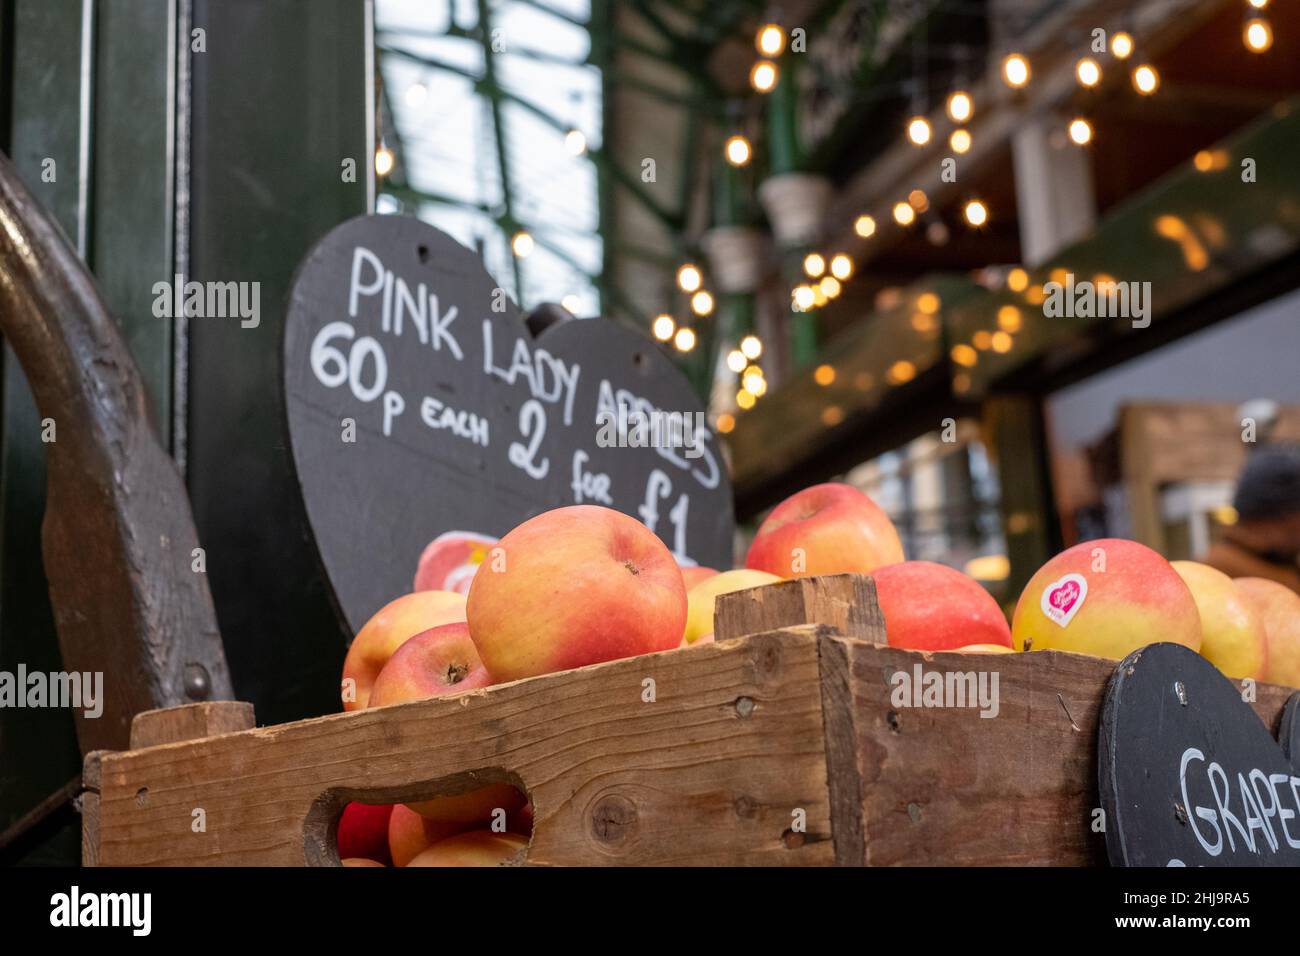 Borough Market, marché urbain couvert à Southwark, dans l'est de Londres, avec une large gamme d'étals alimentaires.Caisse en bois avec pommes Pink Lady au premier plan Banque D'Images